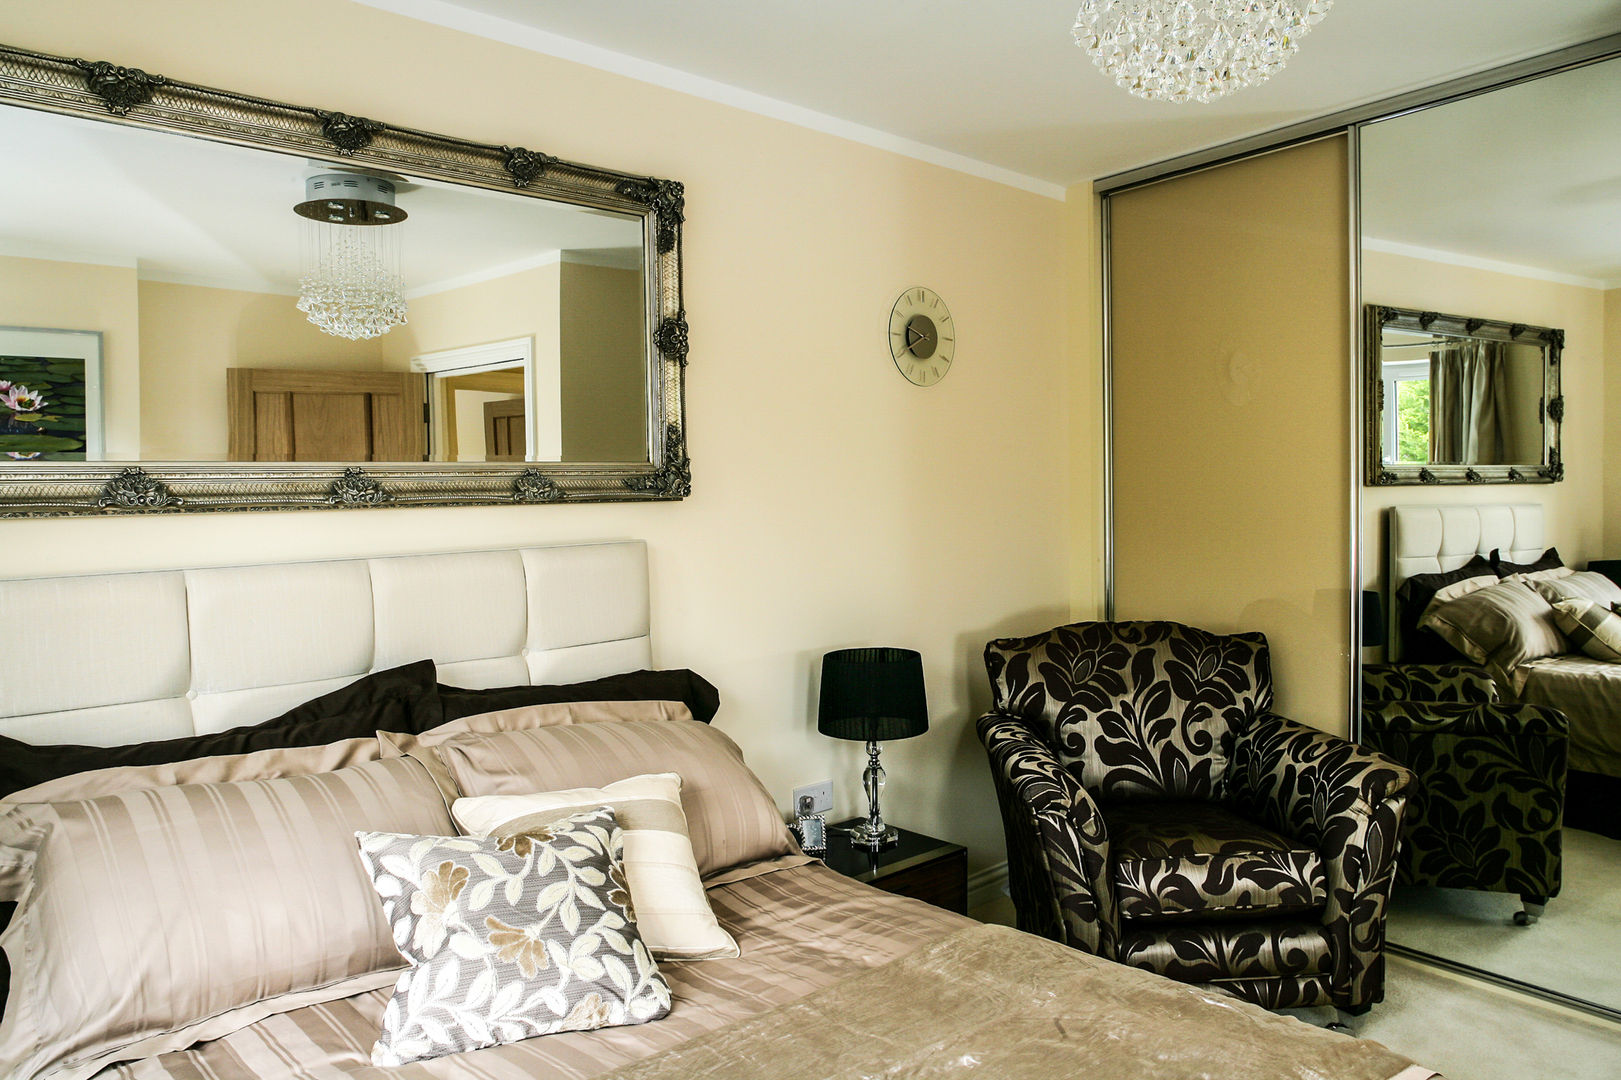 Bedroom Lujansphotography Dormitorios de estilo moderno